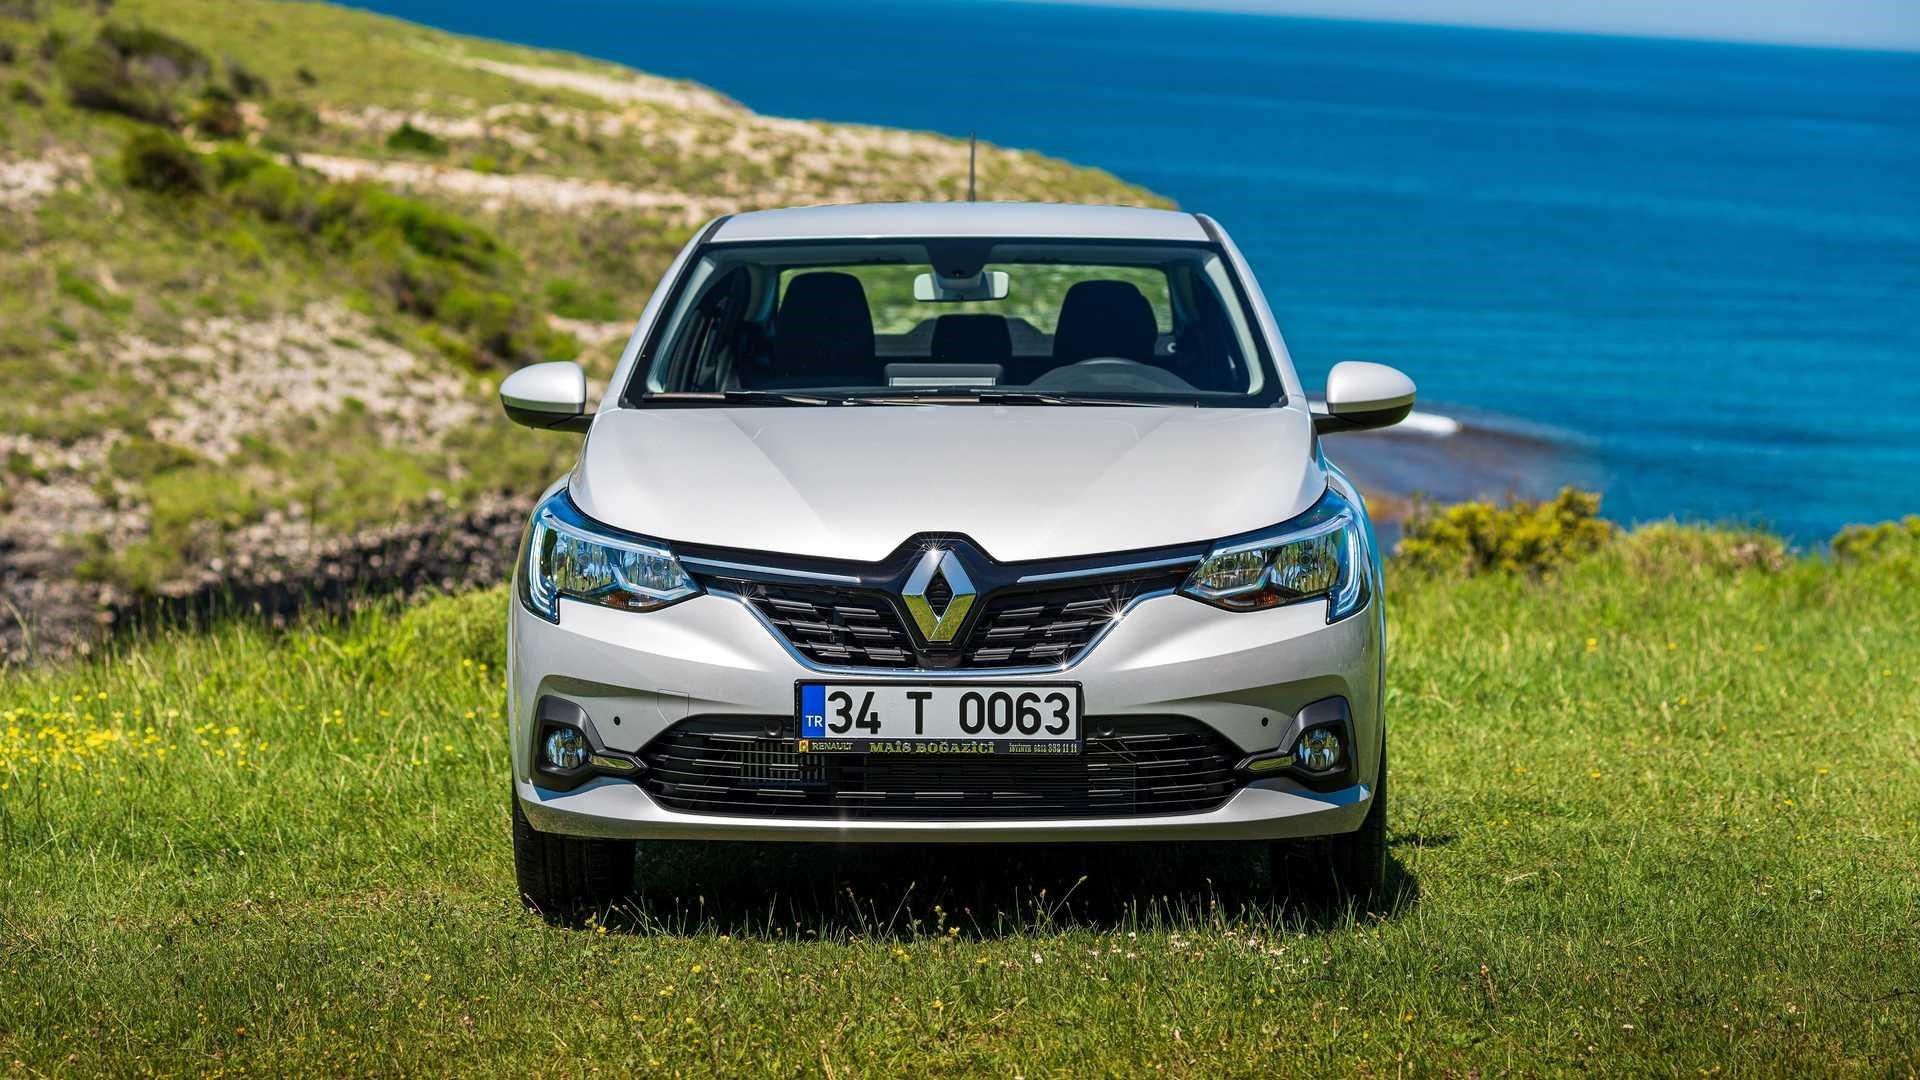 Renault Sonunda En Ucuz Modelinin Listesinde Güncelleme Yaptı! Clio ile Arasındaki Fark Açıldı!